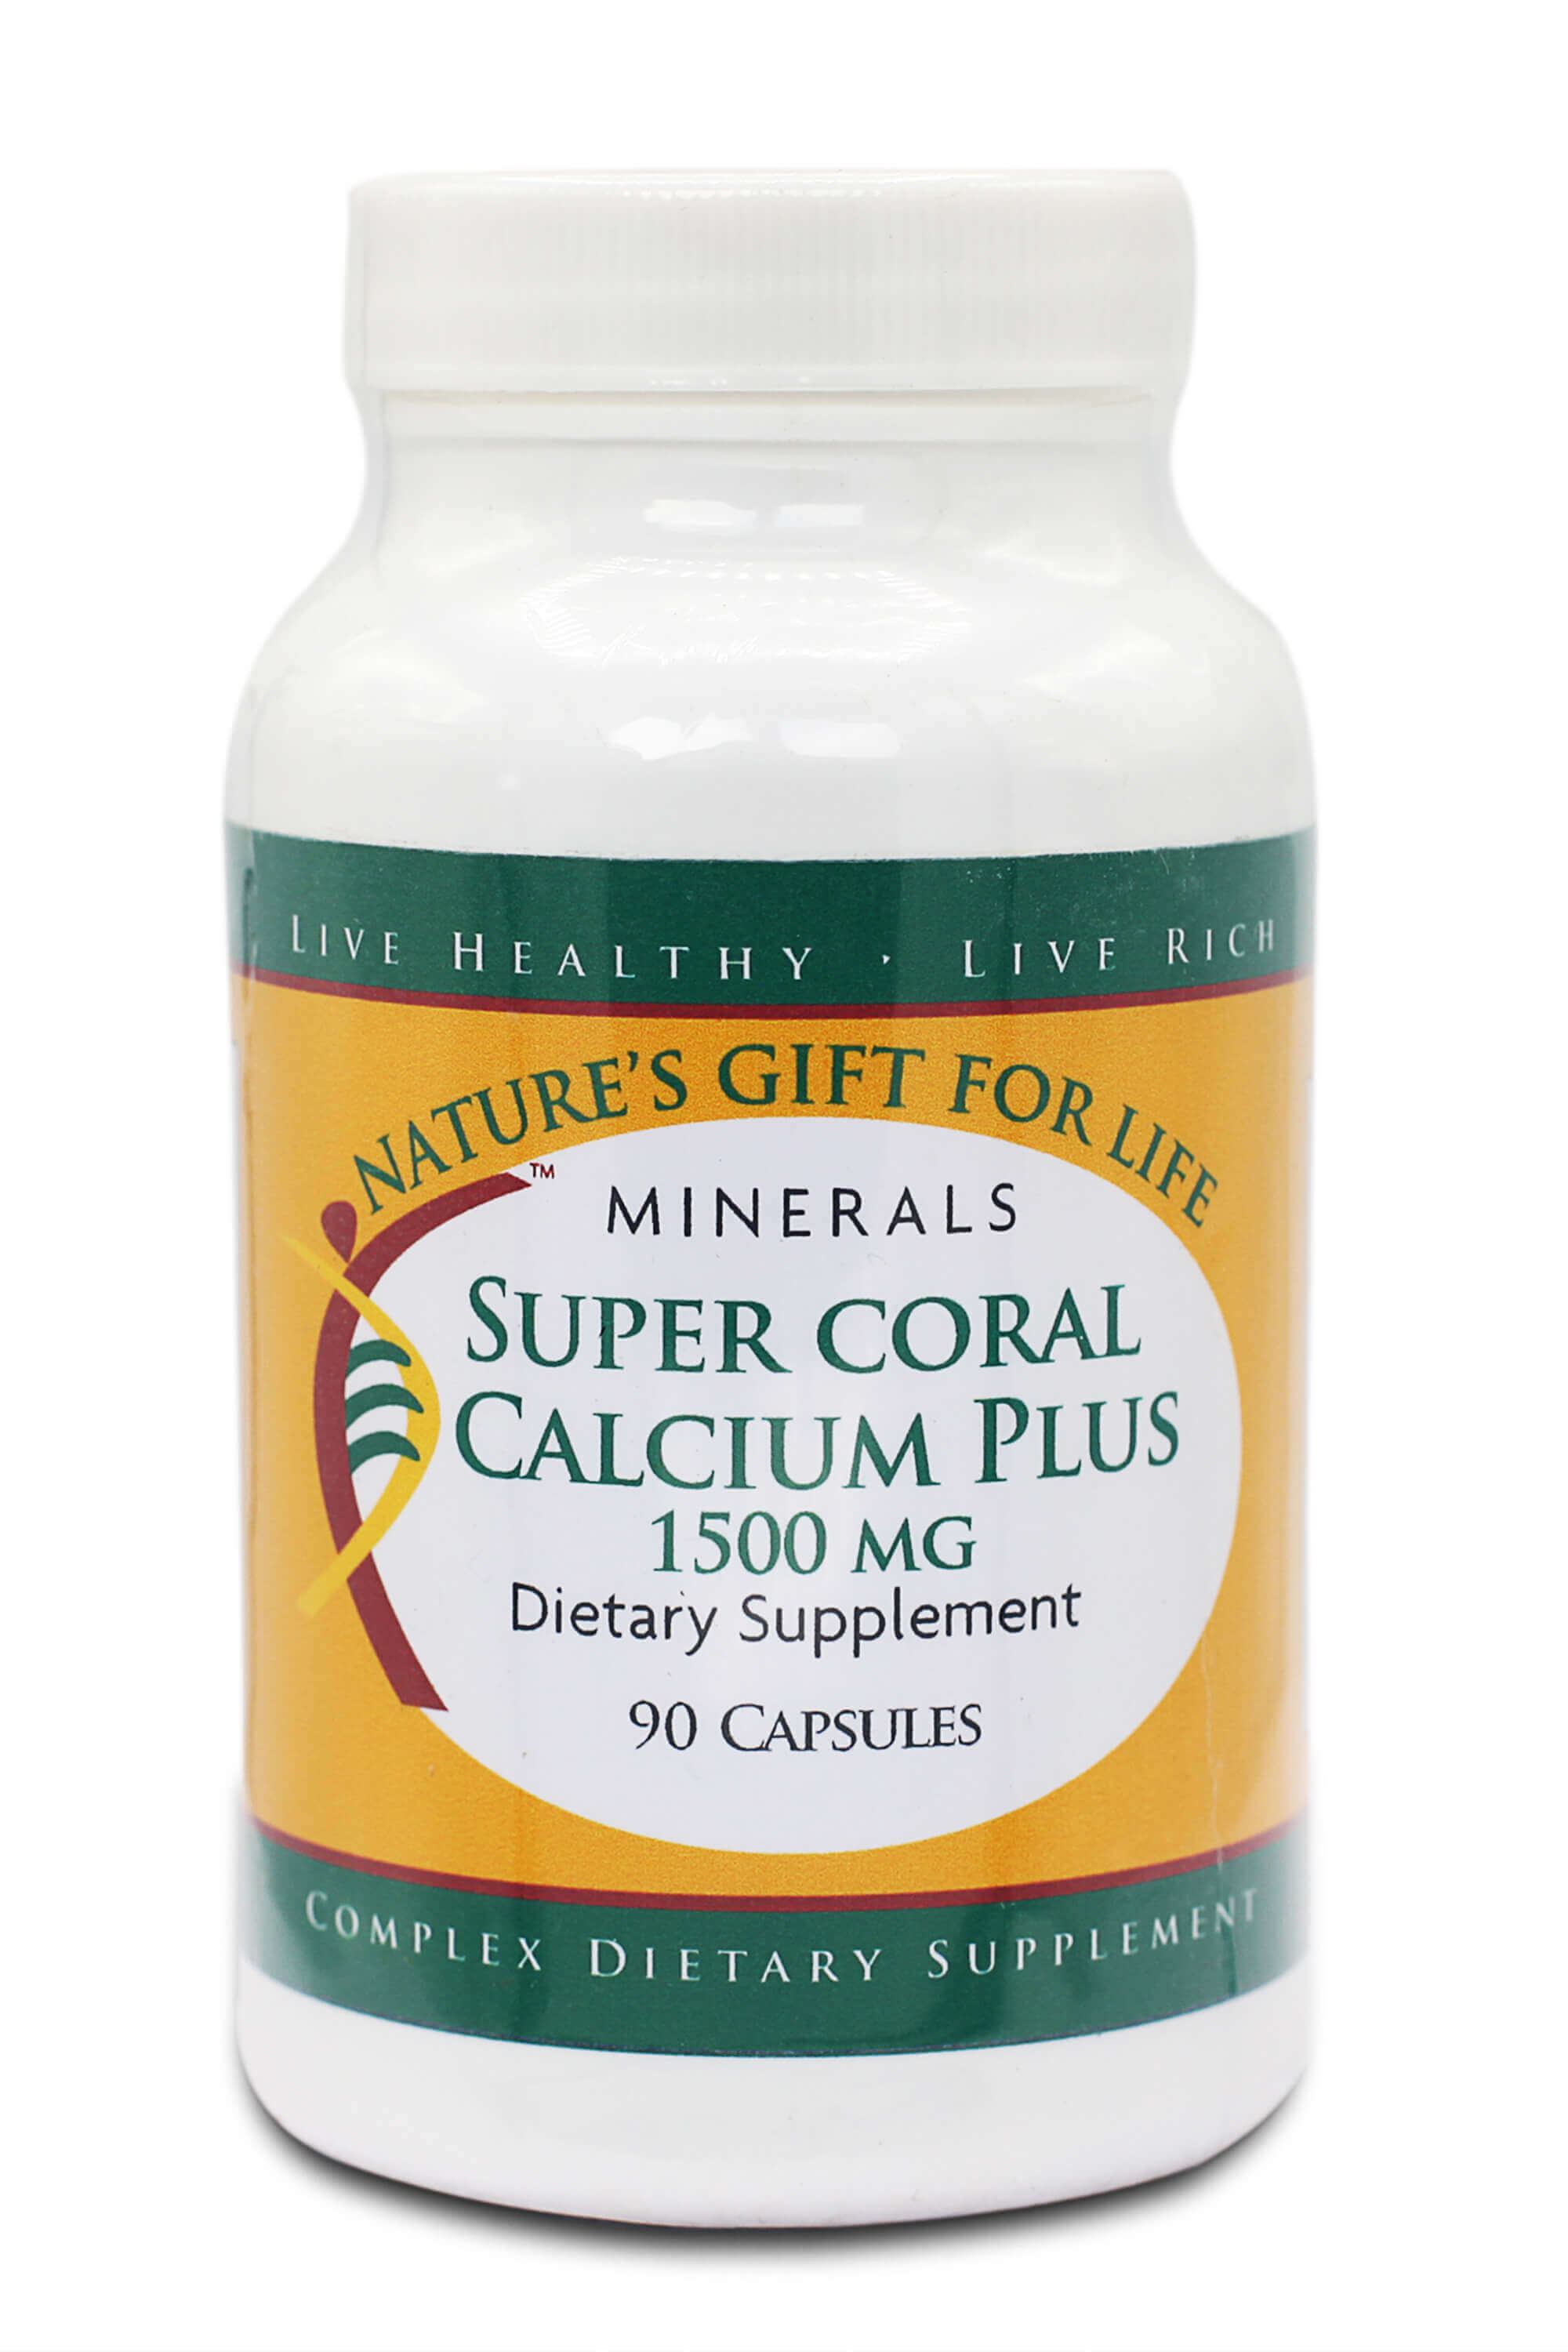 Super Coral Calcium Plus